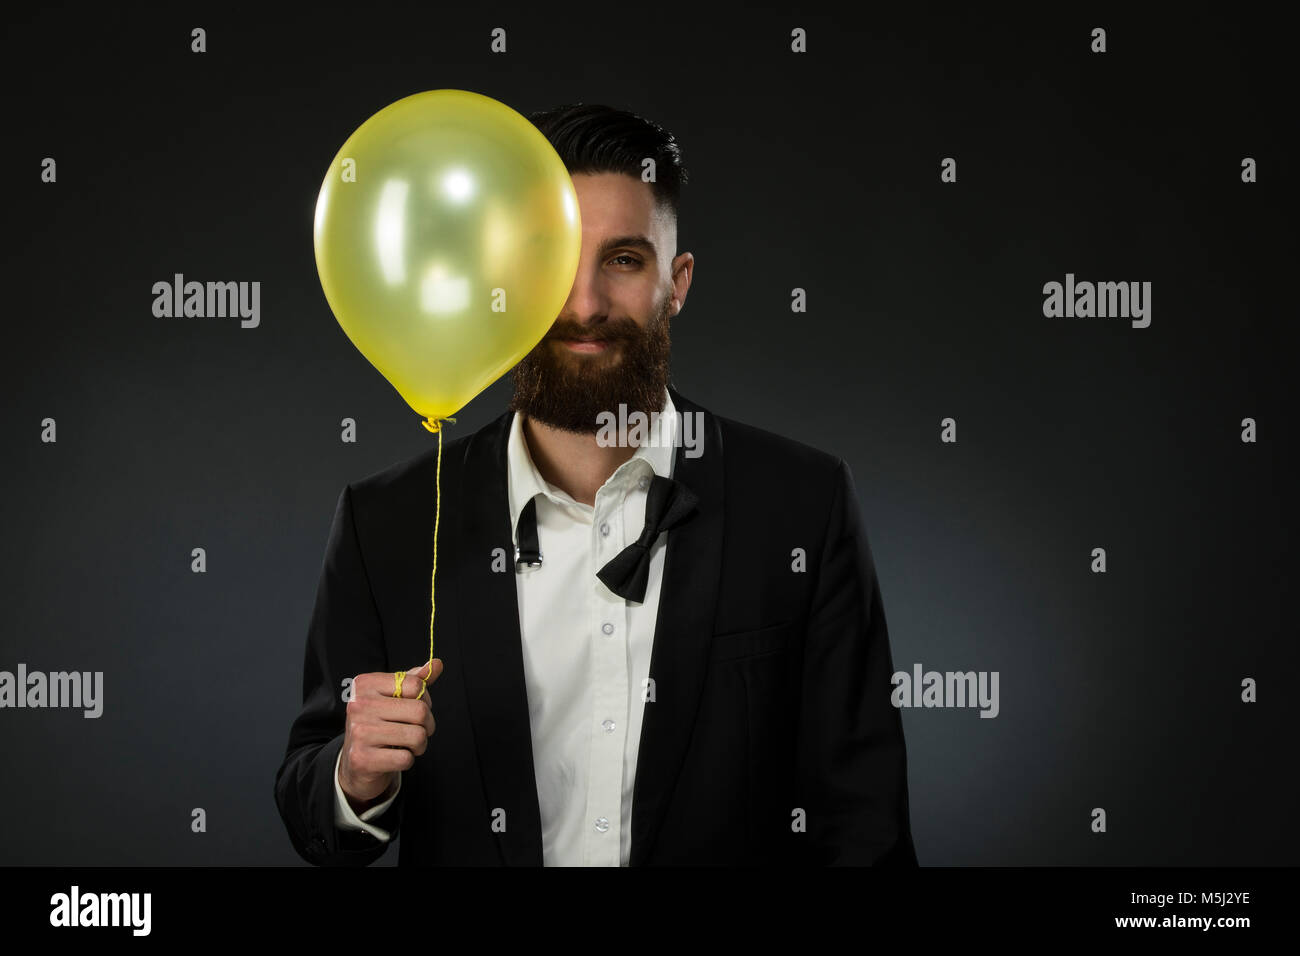 Porträt eines jungen Mannes mit einem Ballon, Tragende lose Black Tie Stockfoto